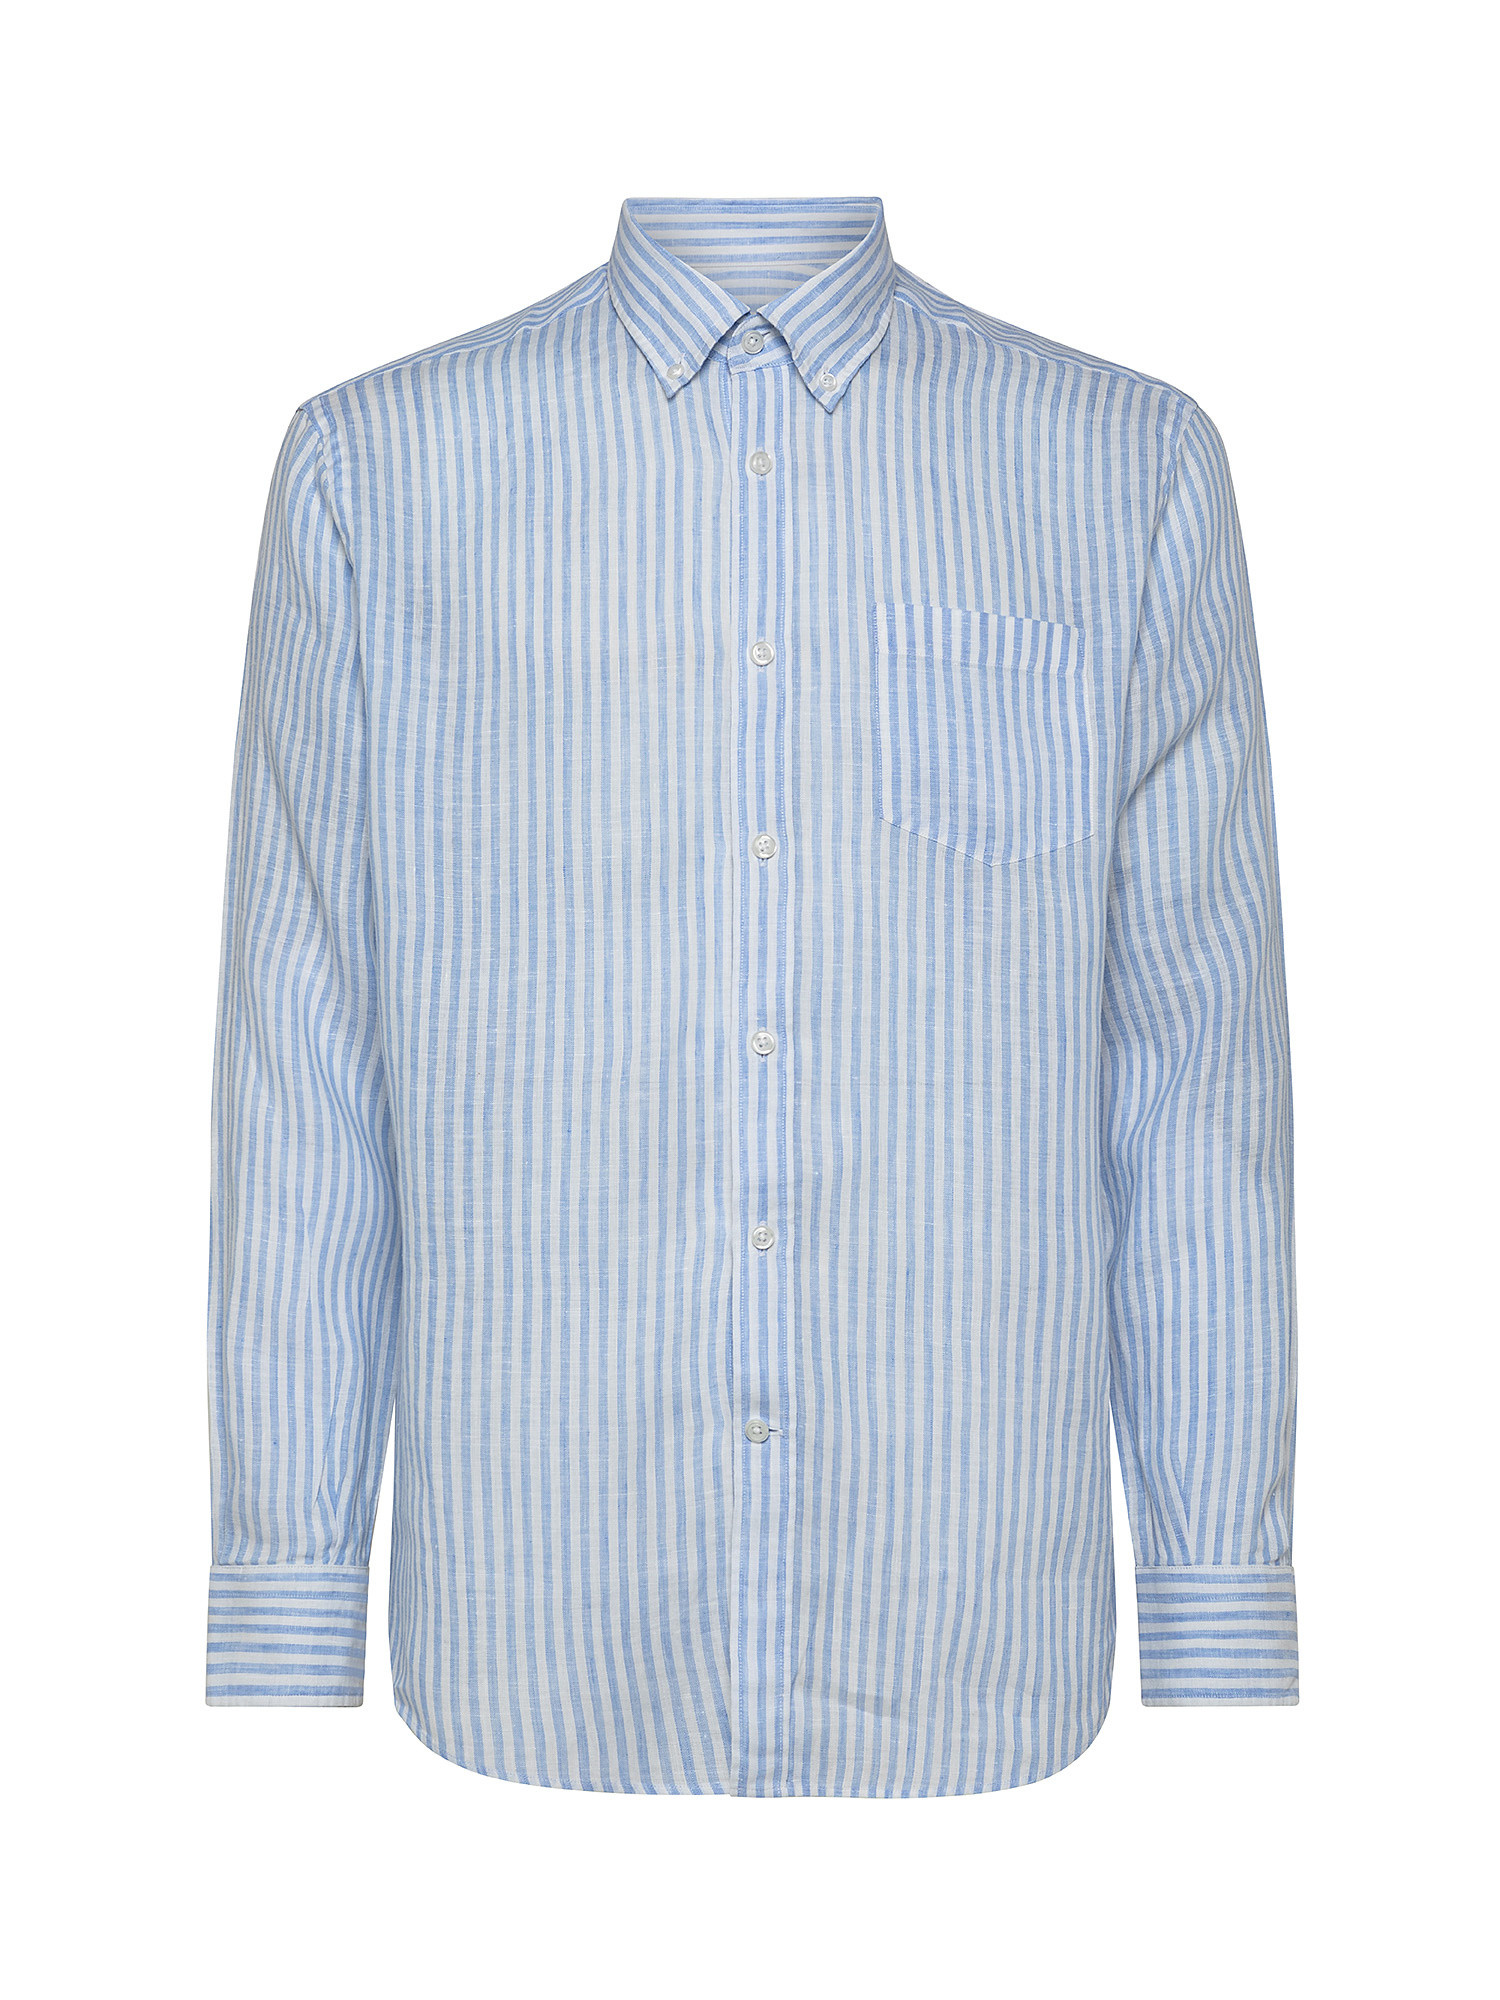 Camicia tailor fit a righe in lino, Azzurro, large